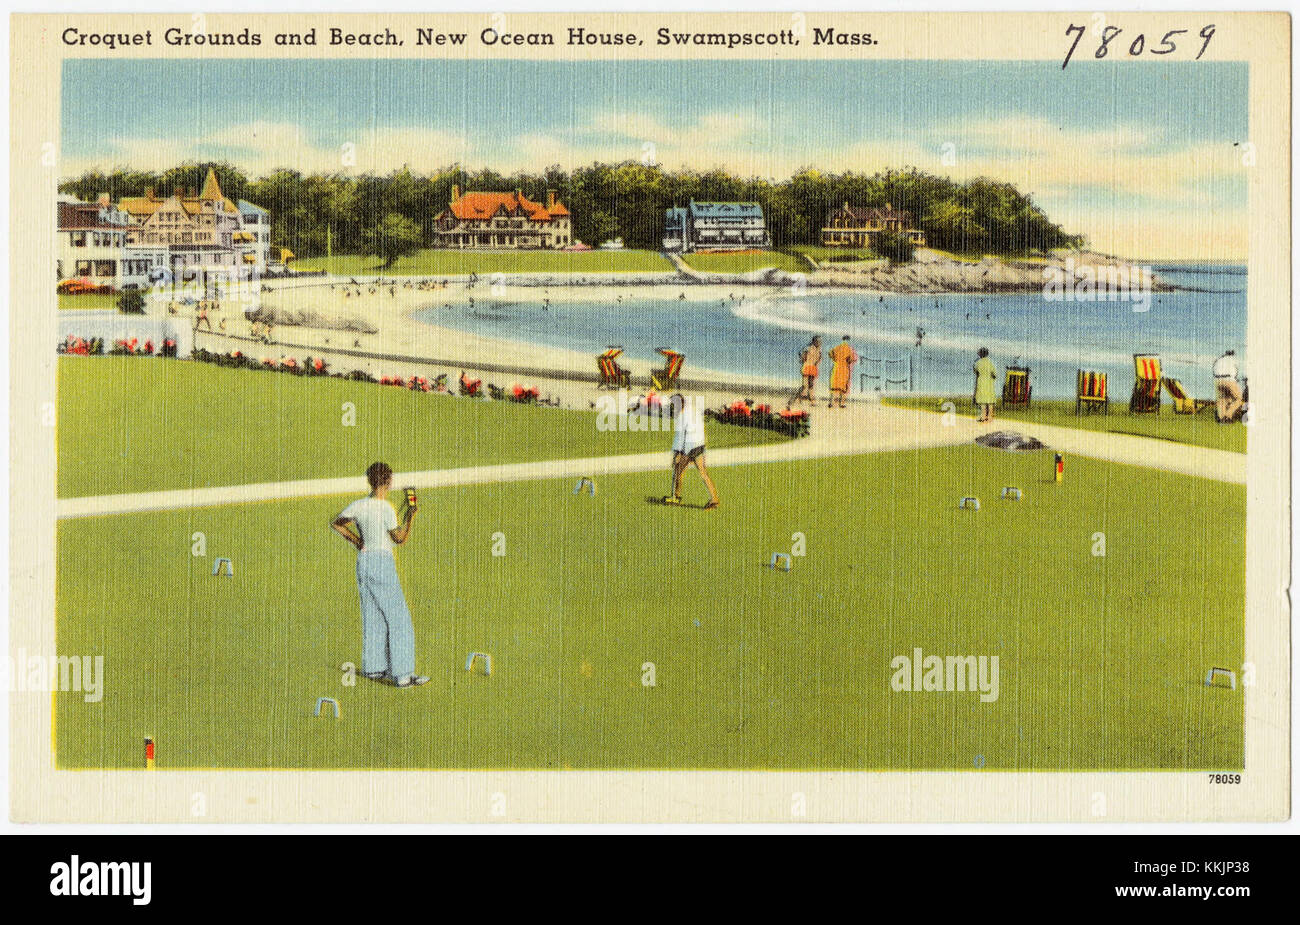 Croquet grounds and beach, New Ocean House, Swampscott, Mass (78059) Stock Photo